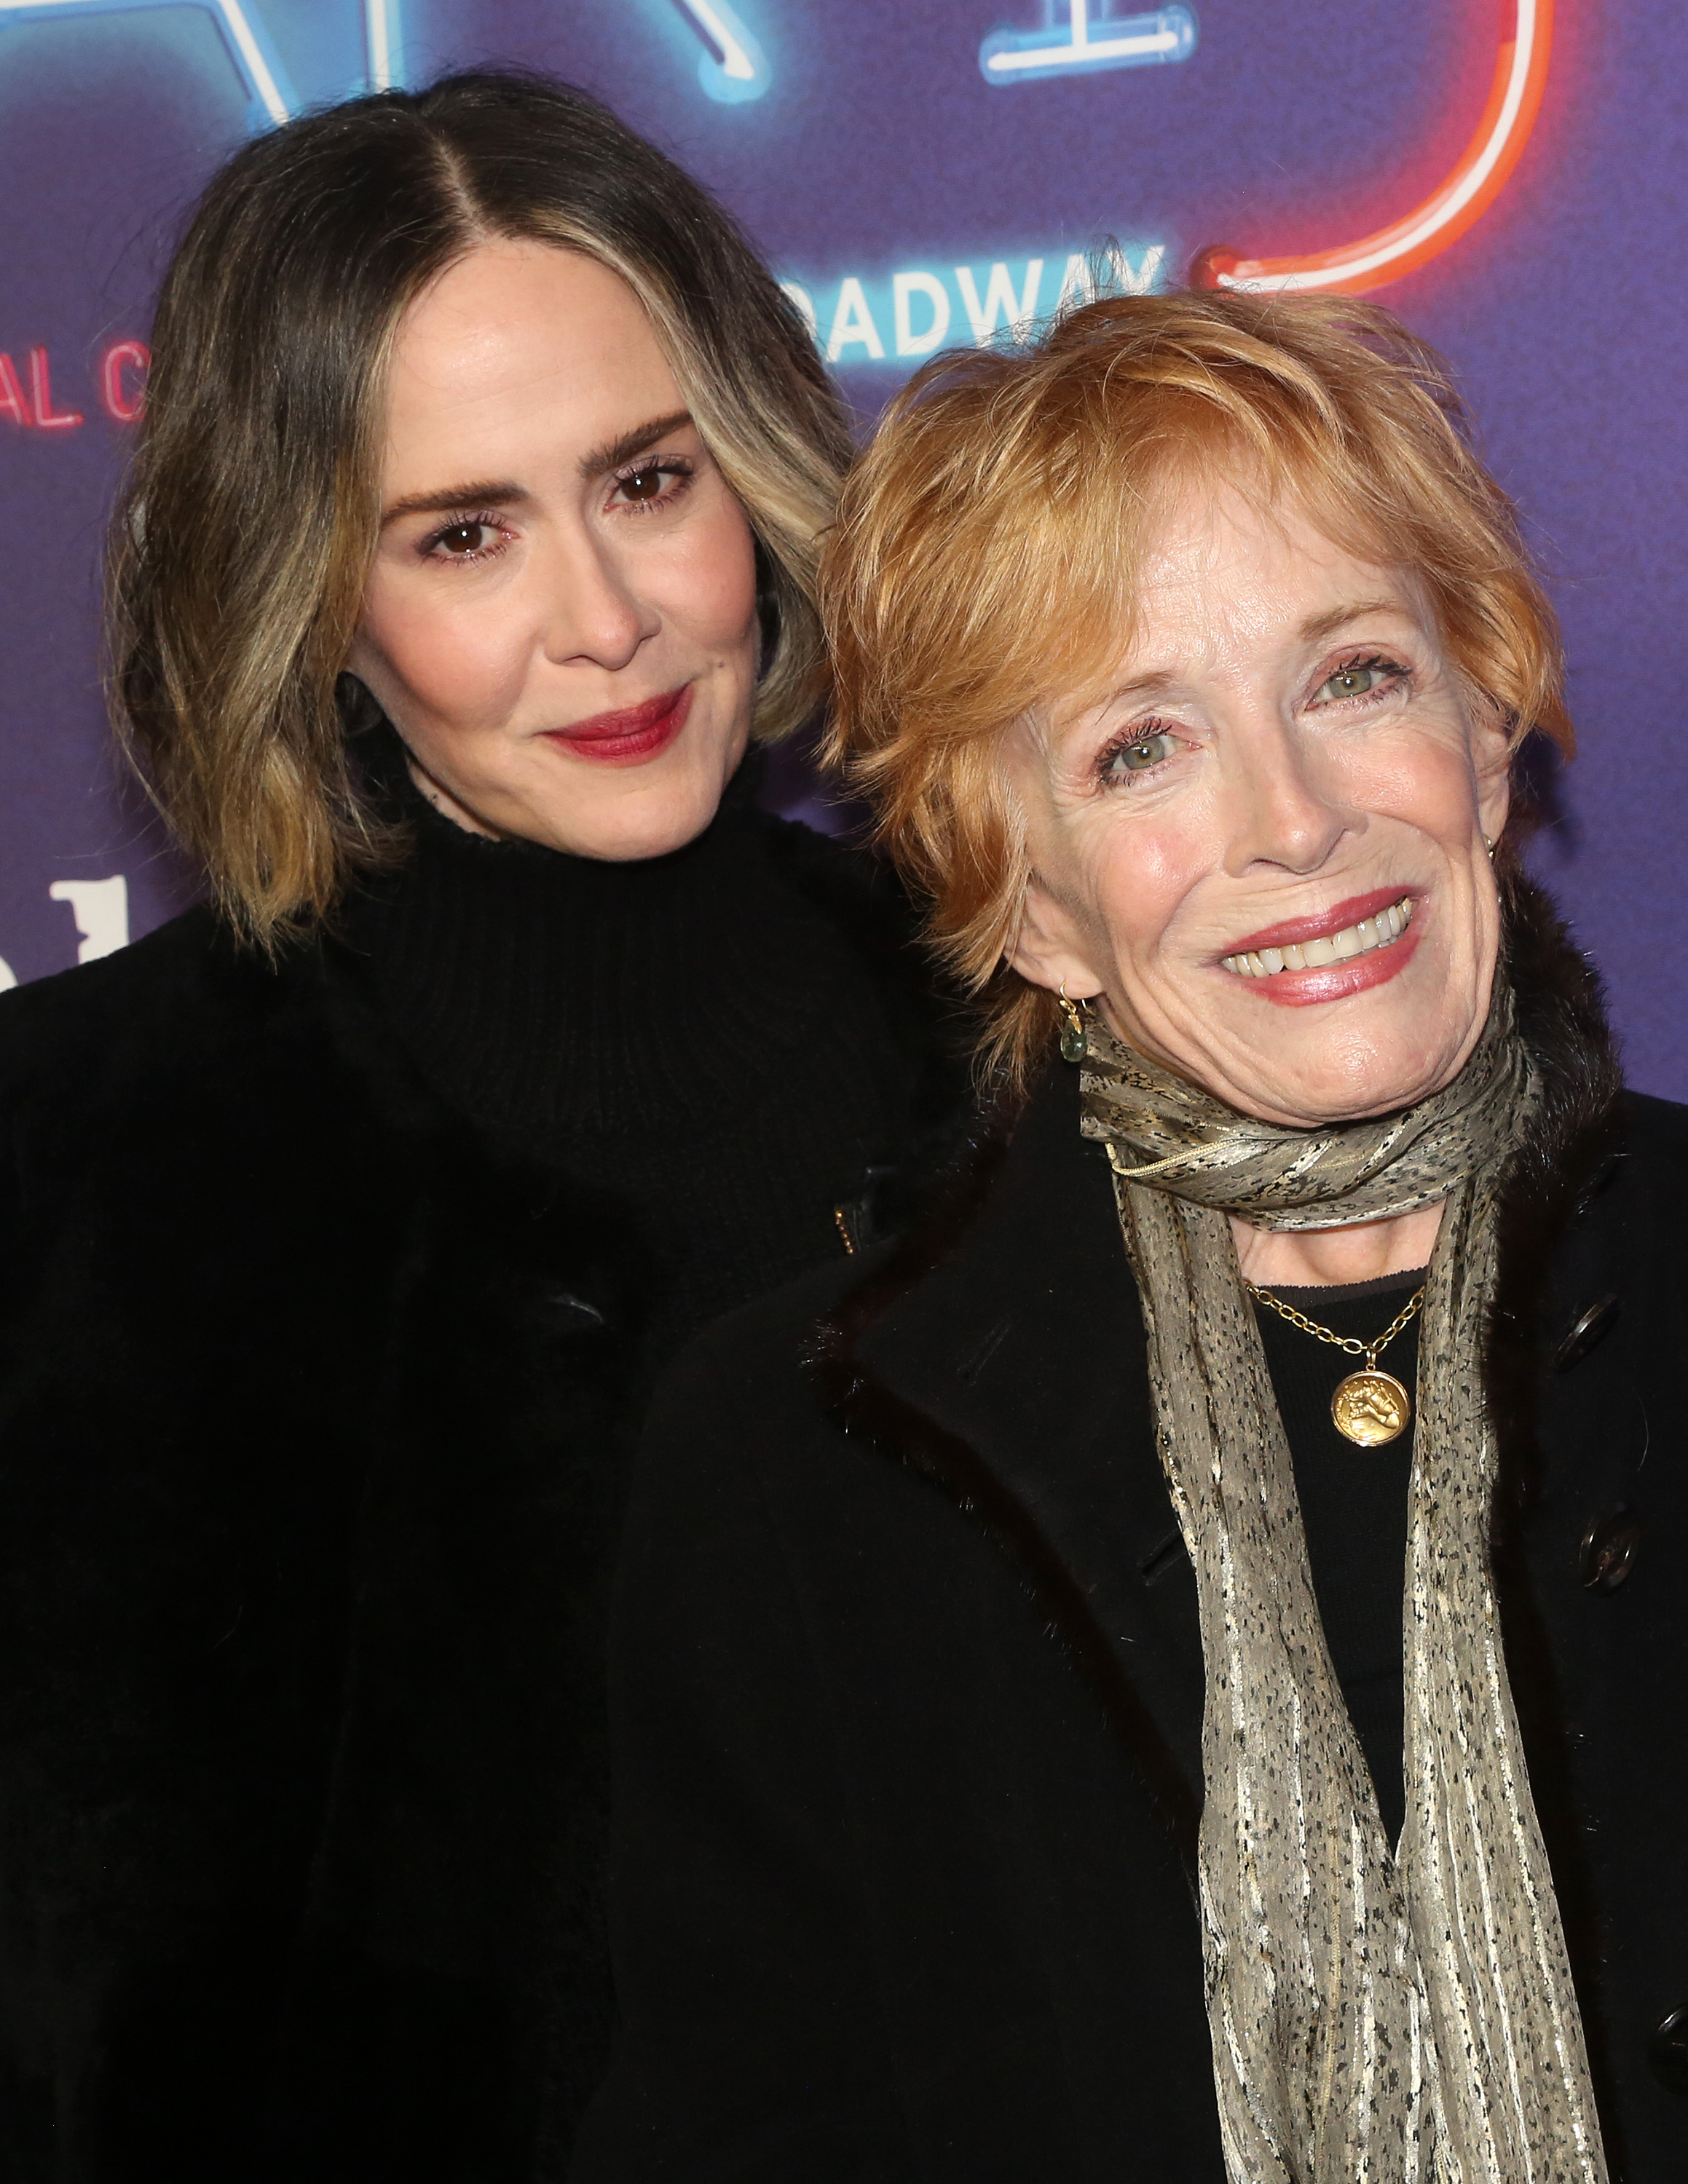 La actriz de "American Gothic" y Holland Taylor en el estreno de "Company" de Stephen Sondheim en Broadway el 9 de diciembre de 2021, en Nueva York. | Fuente: Getty Images